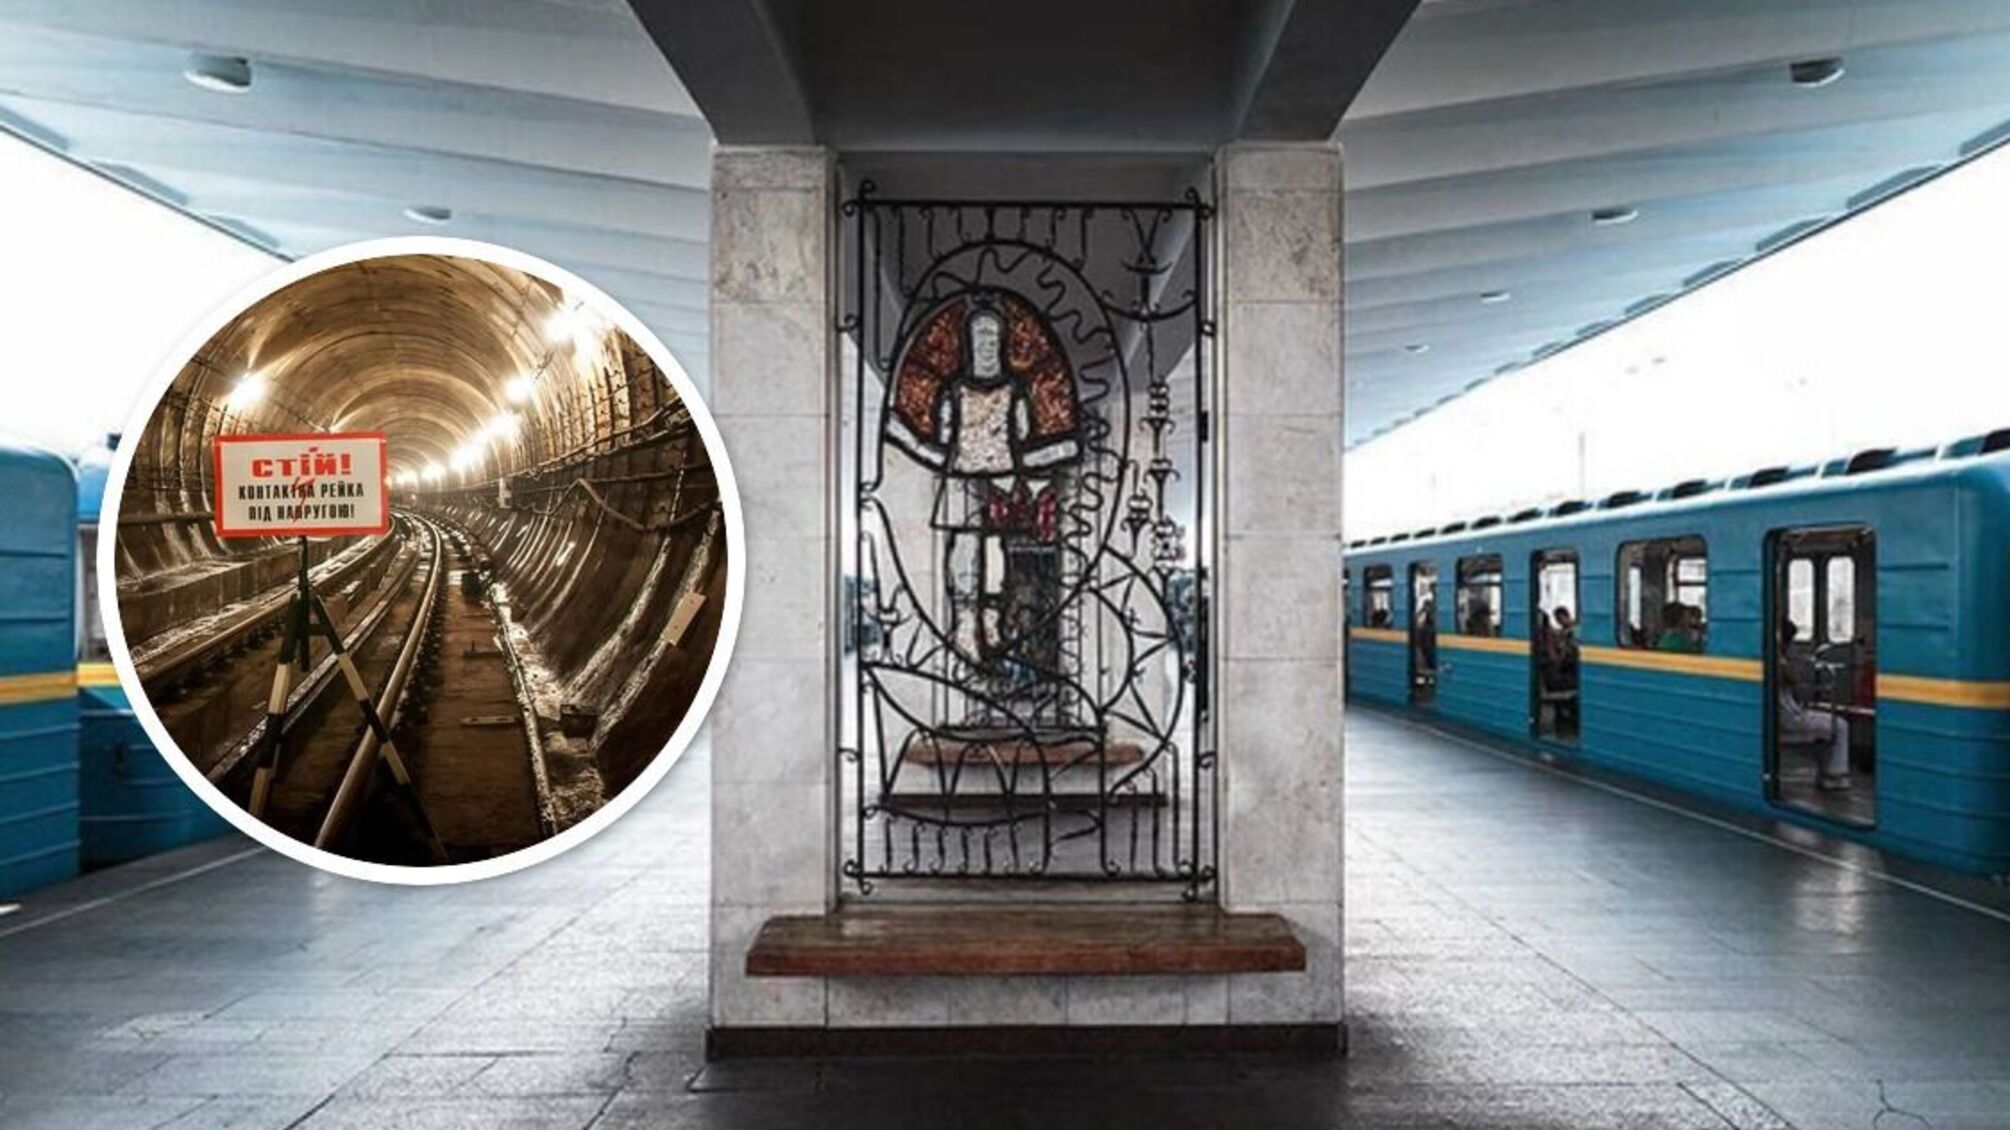 КГГА: у Киеве мужчина попал под поезд метро - что известно